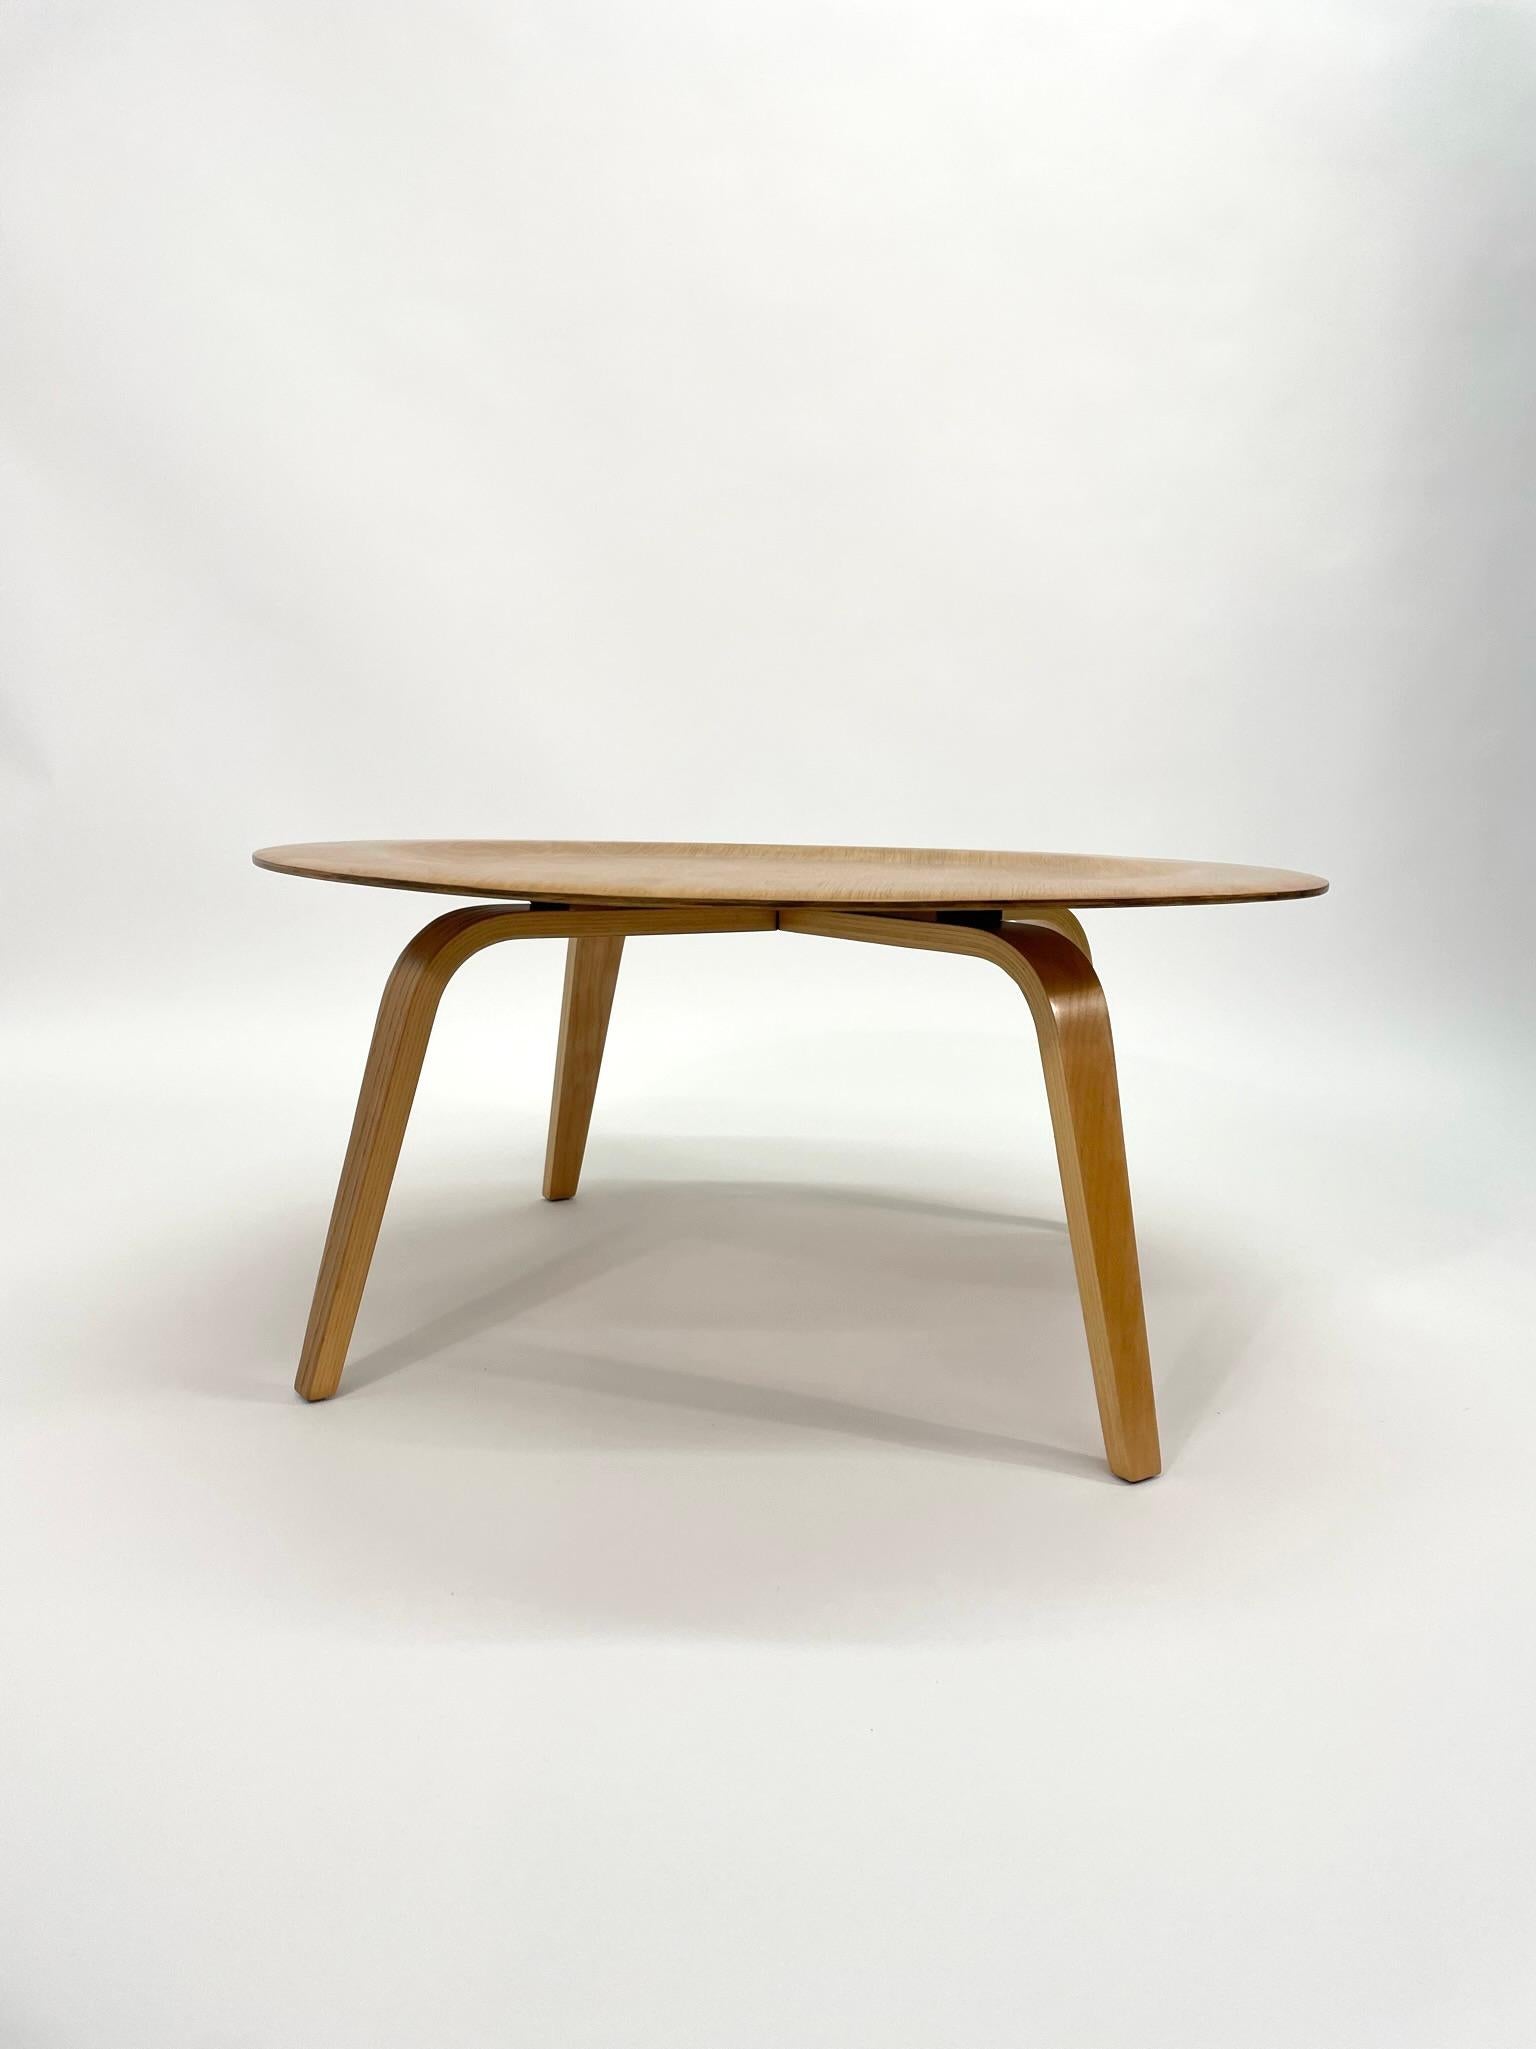 Cette table basse Eames CTW de troisième génération pour Herman Miller a été fabriquée en 1950. Cette table se compose d'un plateau circulaire en contreplaqué à cinq couches, reposant sur quatre pieds assortis en contreplaqué plié à près de 90